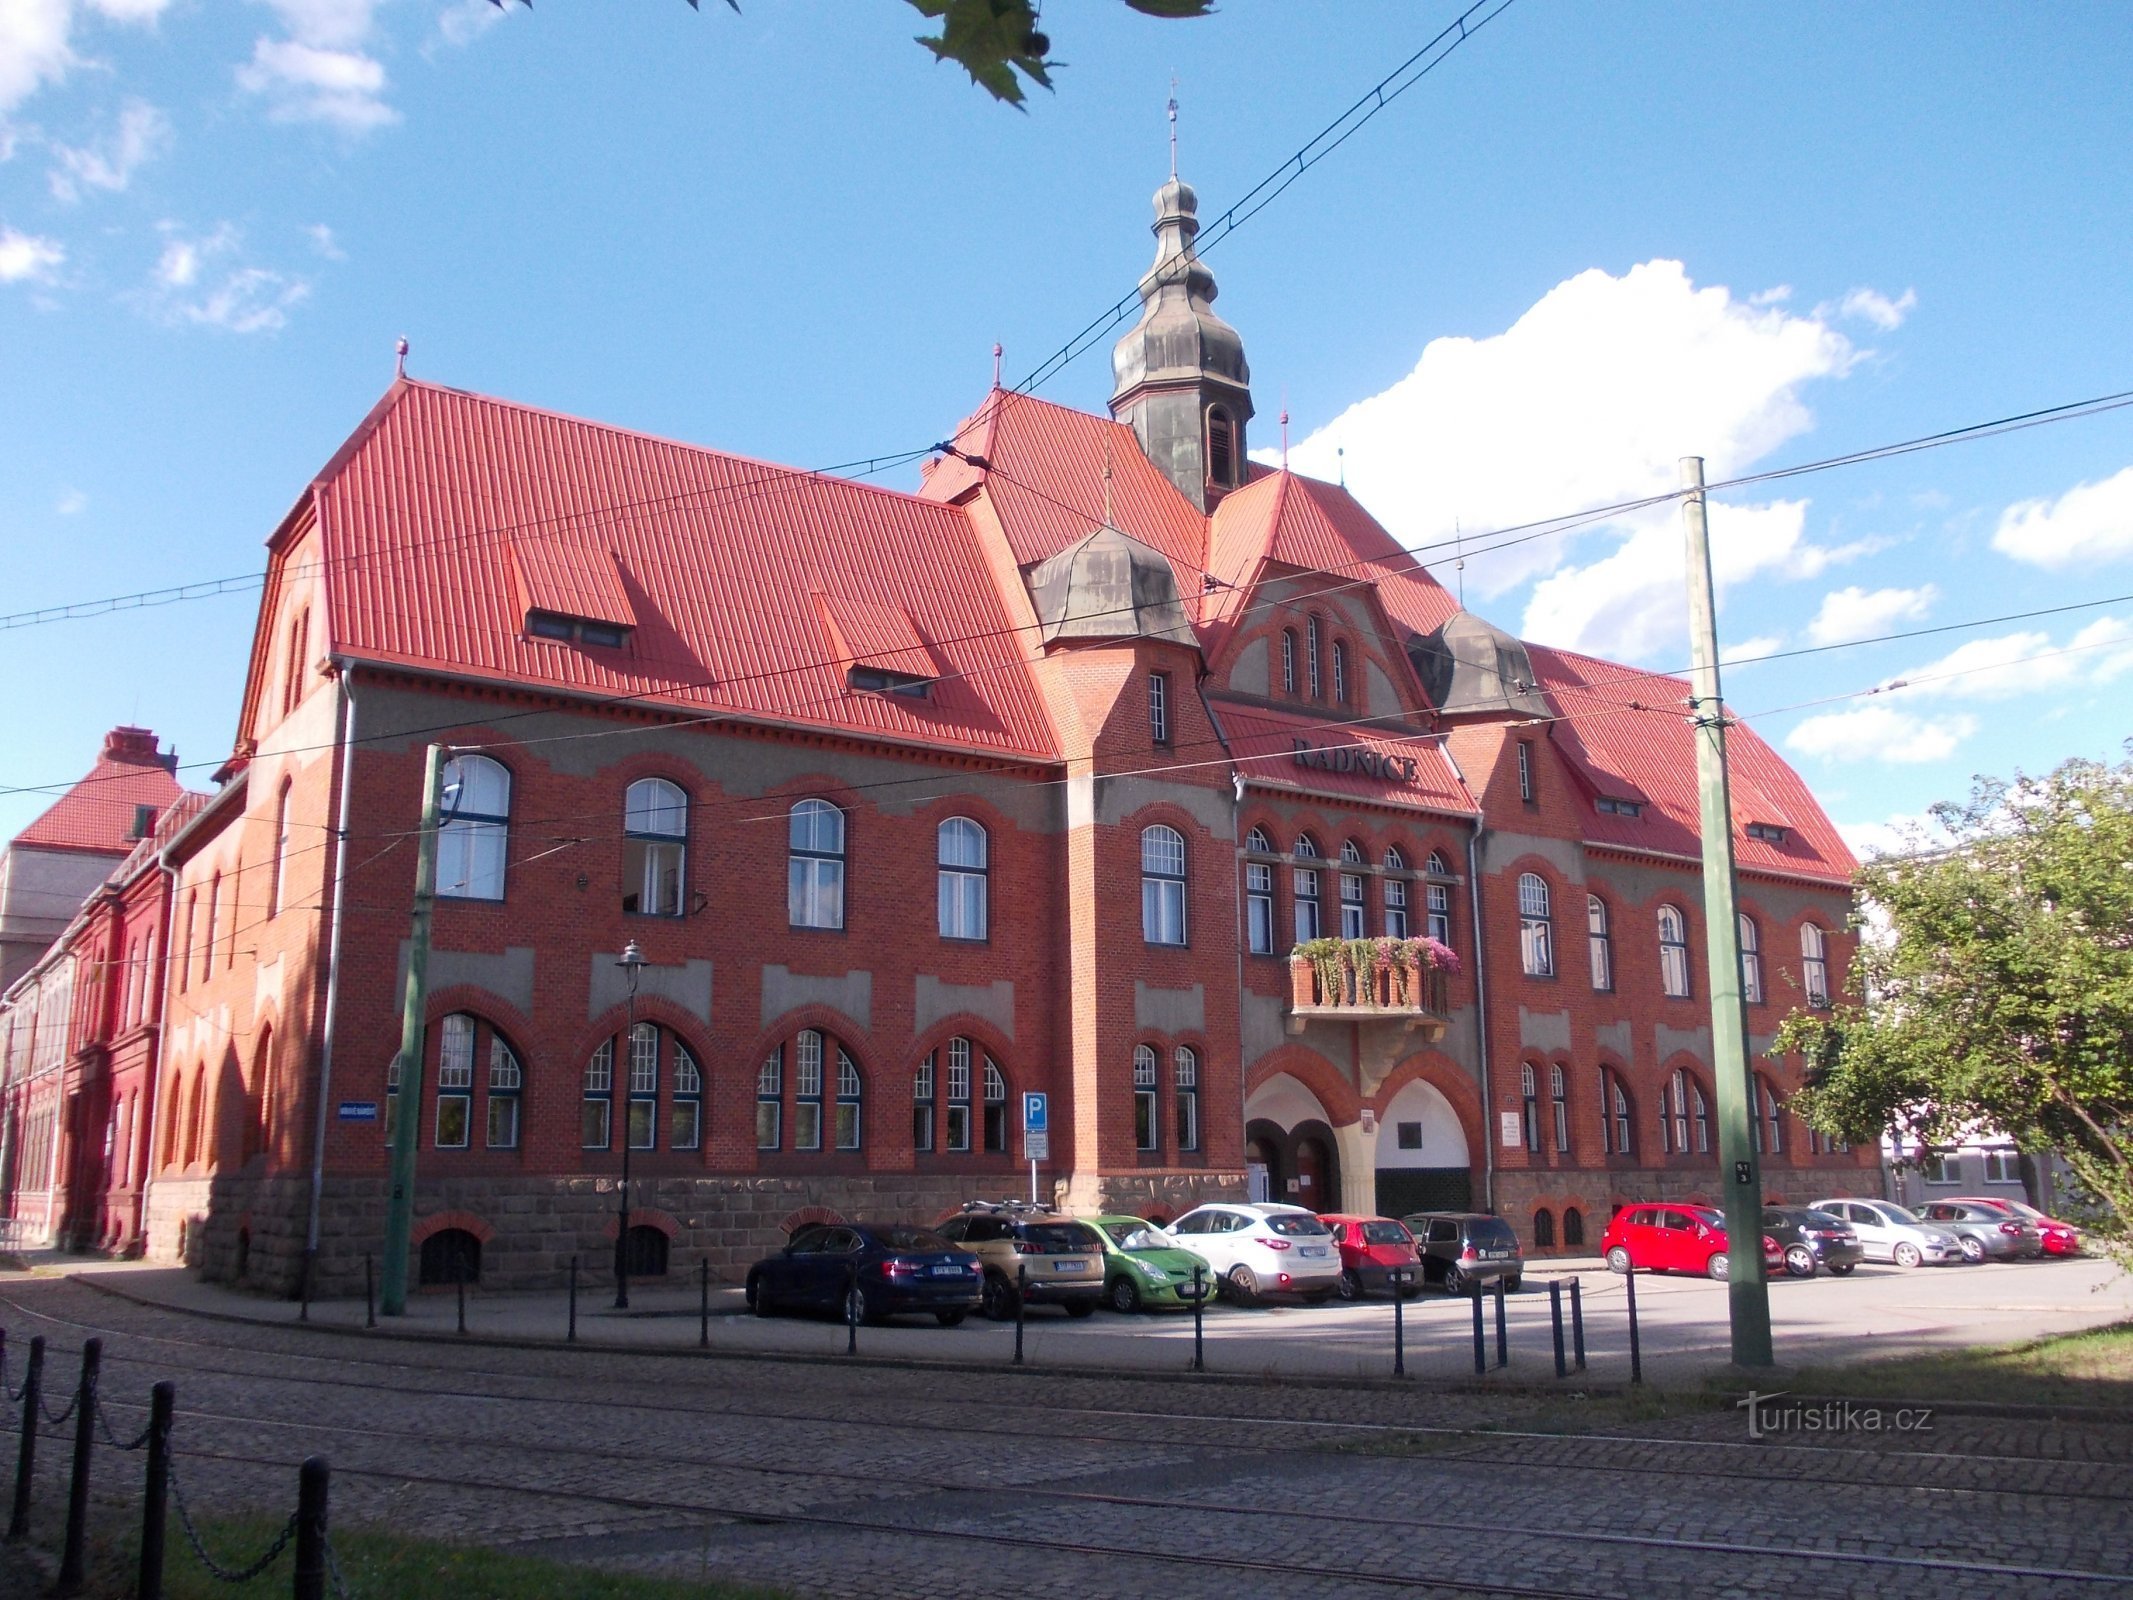 Δημαρχείο Vítkovice που χτίστηκε το 1901 - 1902